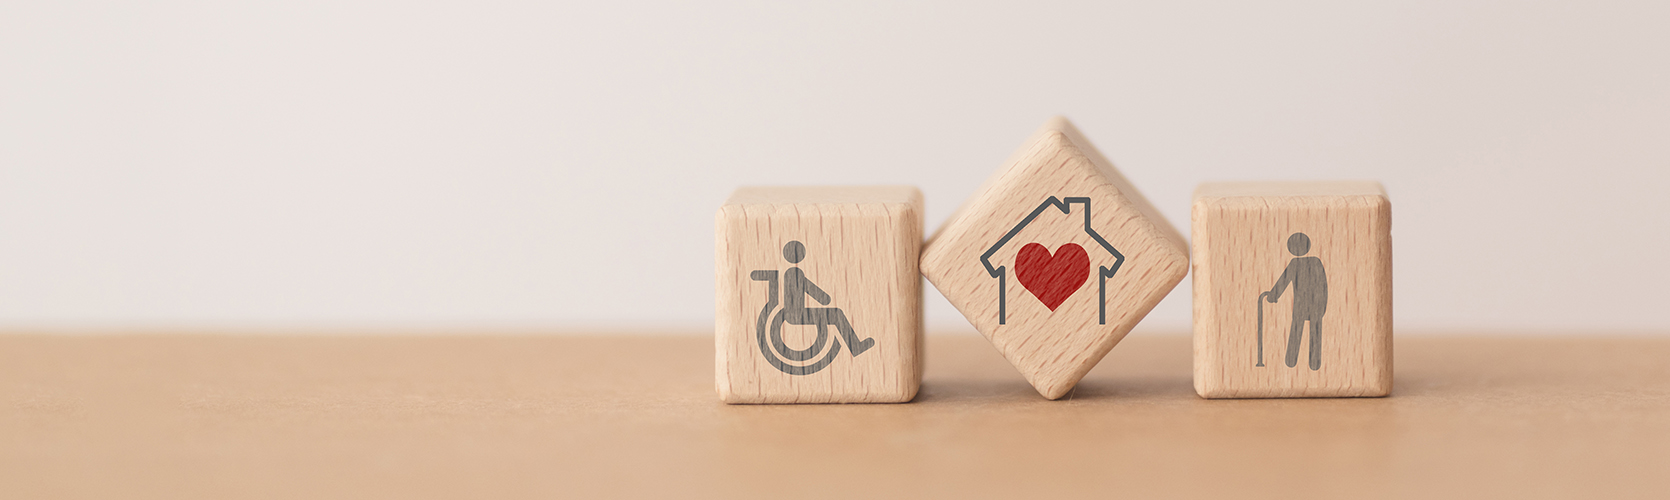 3 Holzblöcke mit Rollstuhlfahrersymbol, rotem Herz in einem Haus und einer Person mit Gehstock